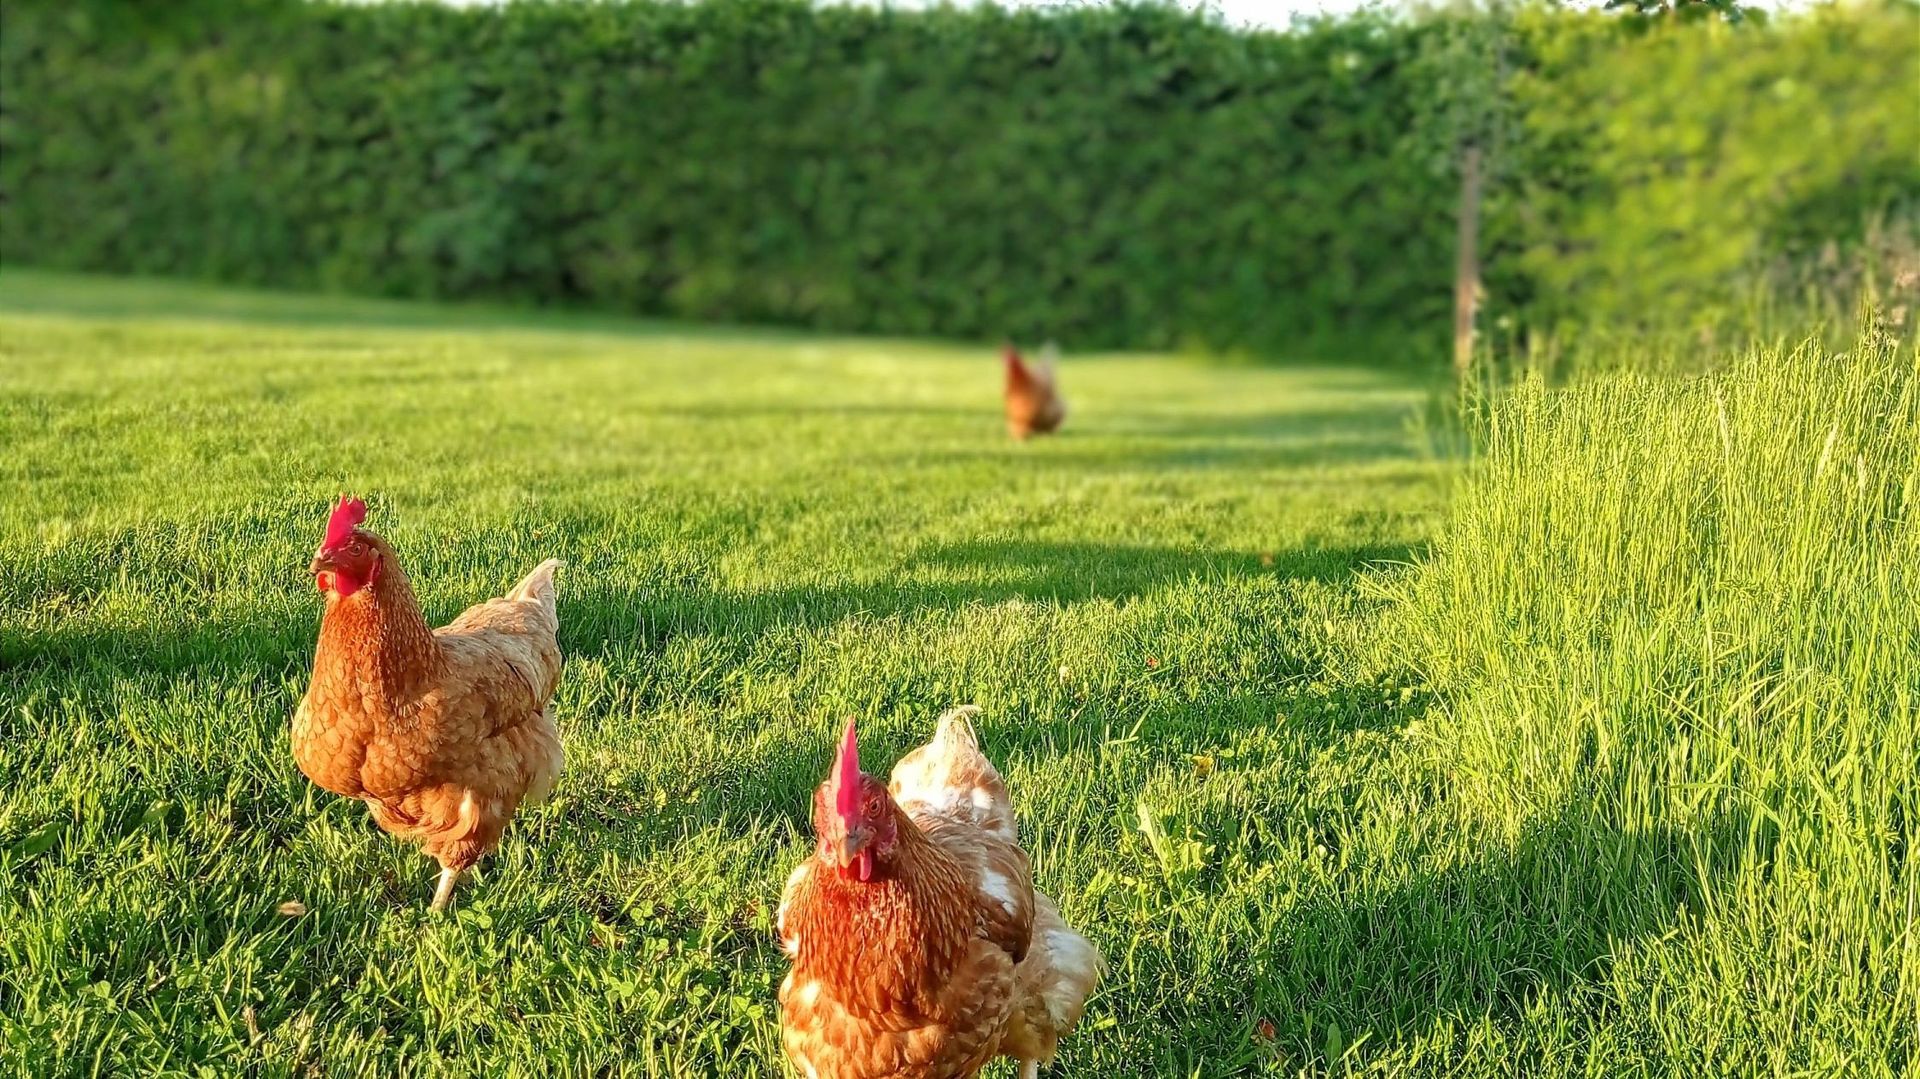 Laissez les poules gambader dans la pelouse